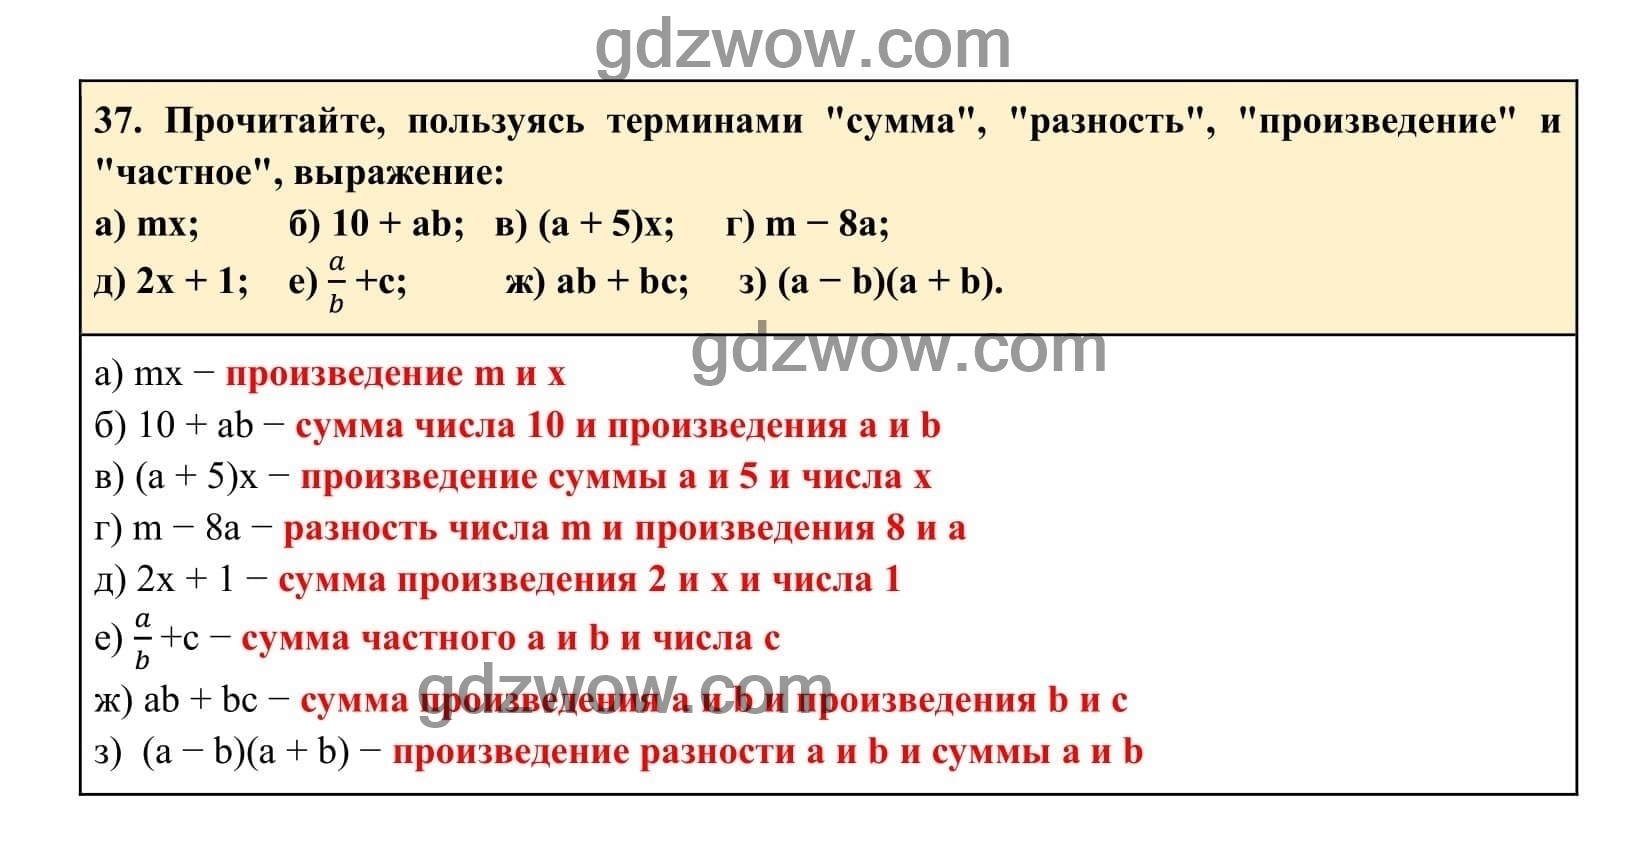 Упражнение 37 - ГДЗ по Алгебре 7 класс Учебник Макарычев (решебник) - GDZwow